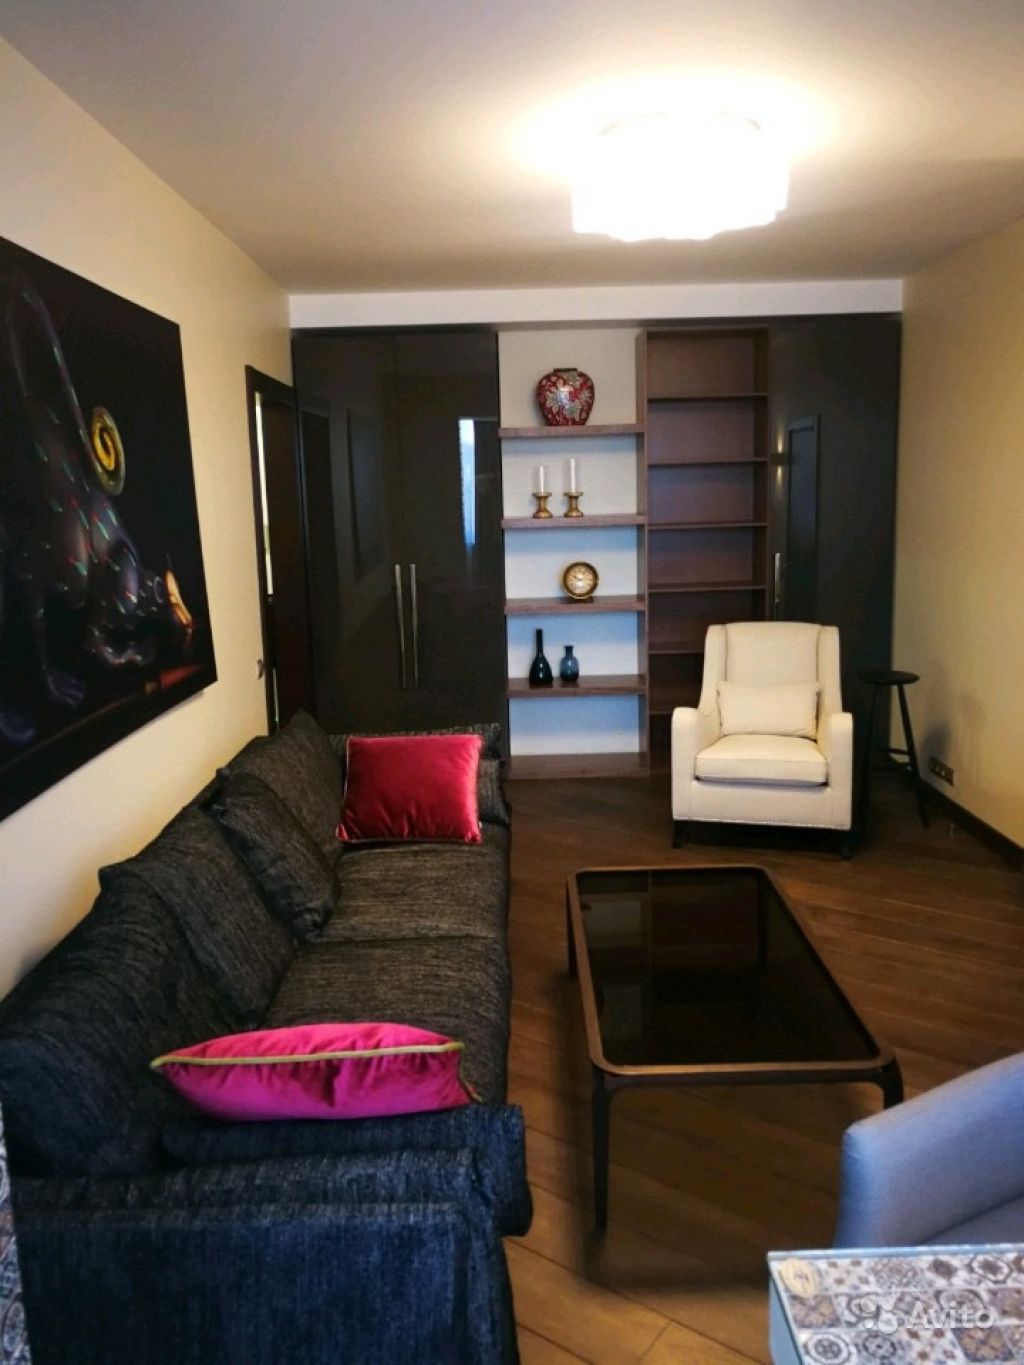 Сдам квартиру 3-к квартира 70 м² на 7 этаже 9-этажного кирпичного дома в Москве. Фото 1